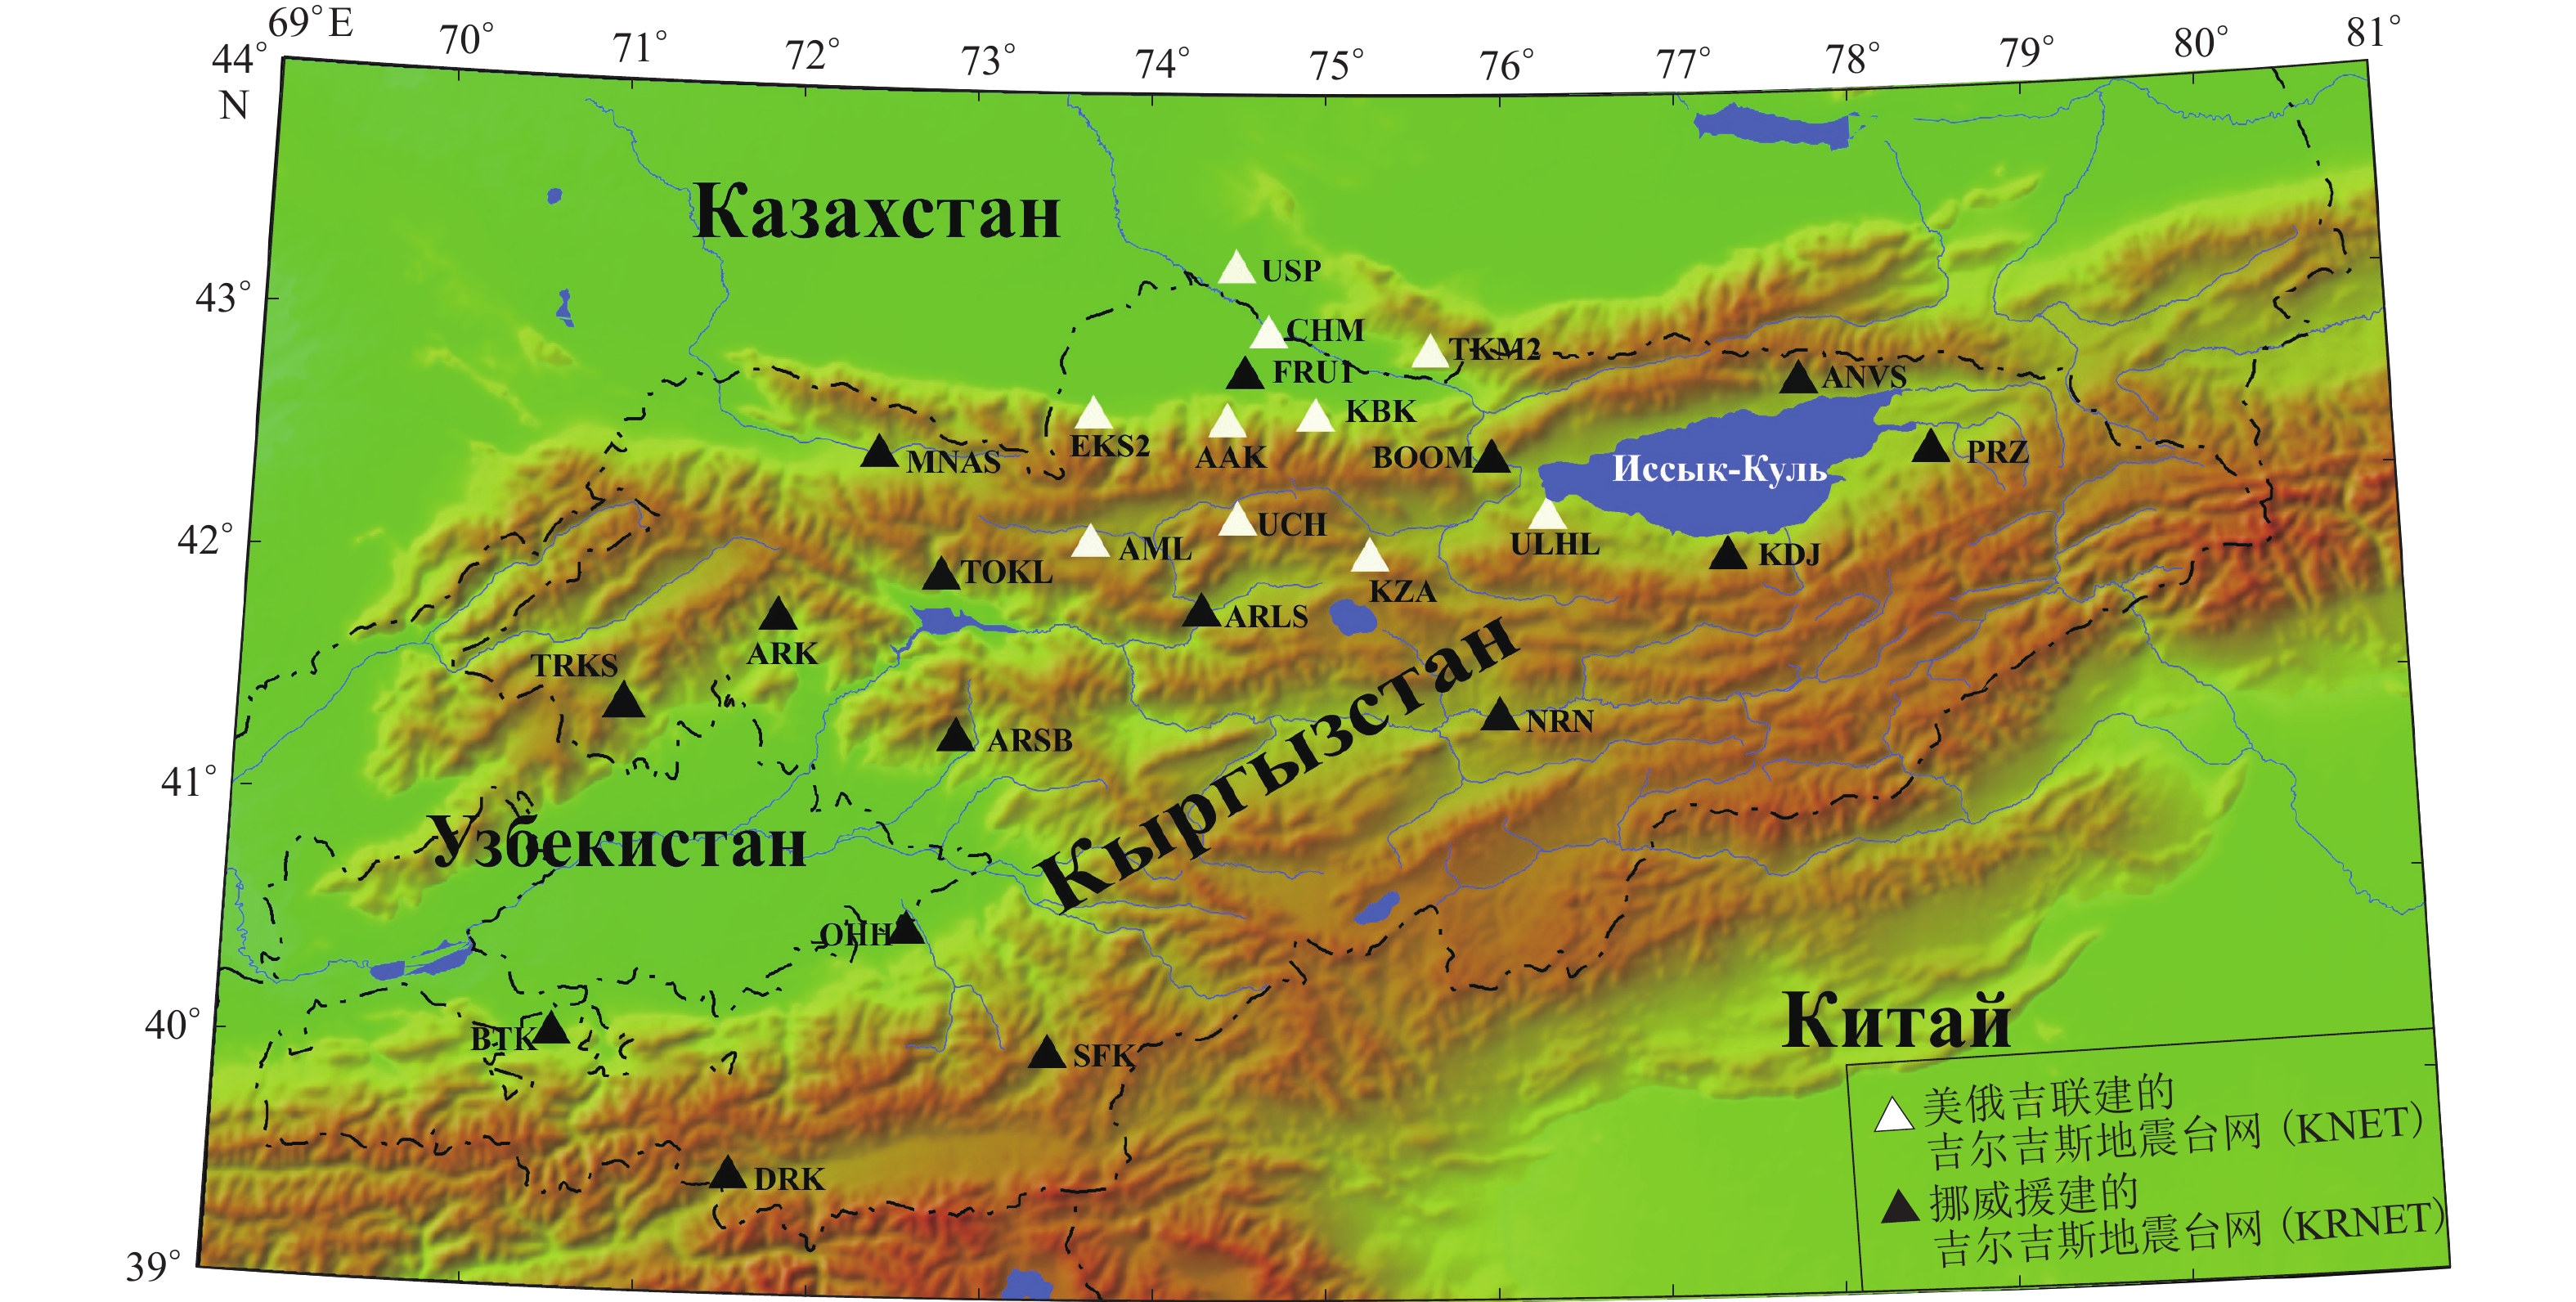 2018吉尔吉斯斯坦旅游攻略,吉尔吉斯斯坦自由行攻略,蚂蜂窝吉尔吉斯斯坦出游攻略游记 - 蚂蜂窝